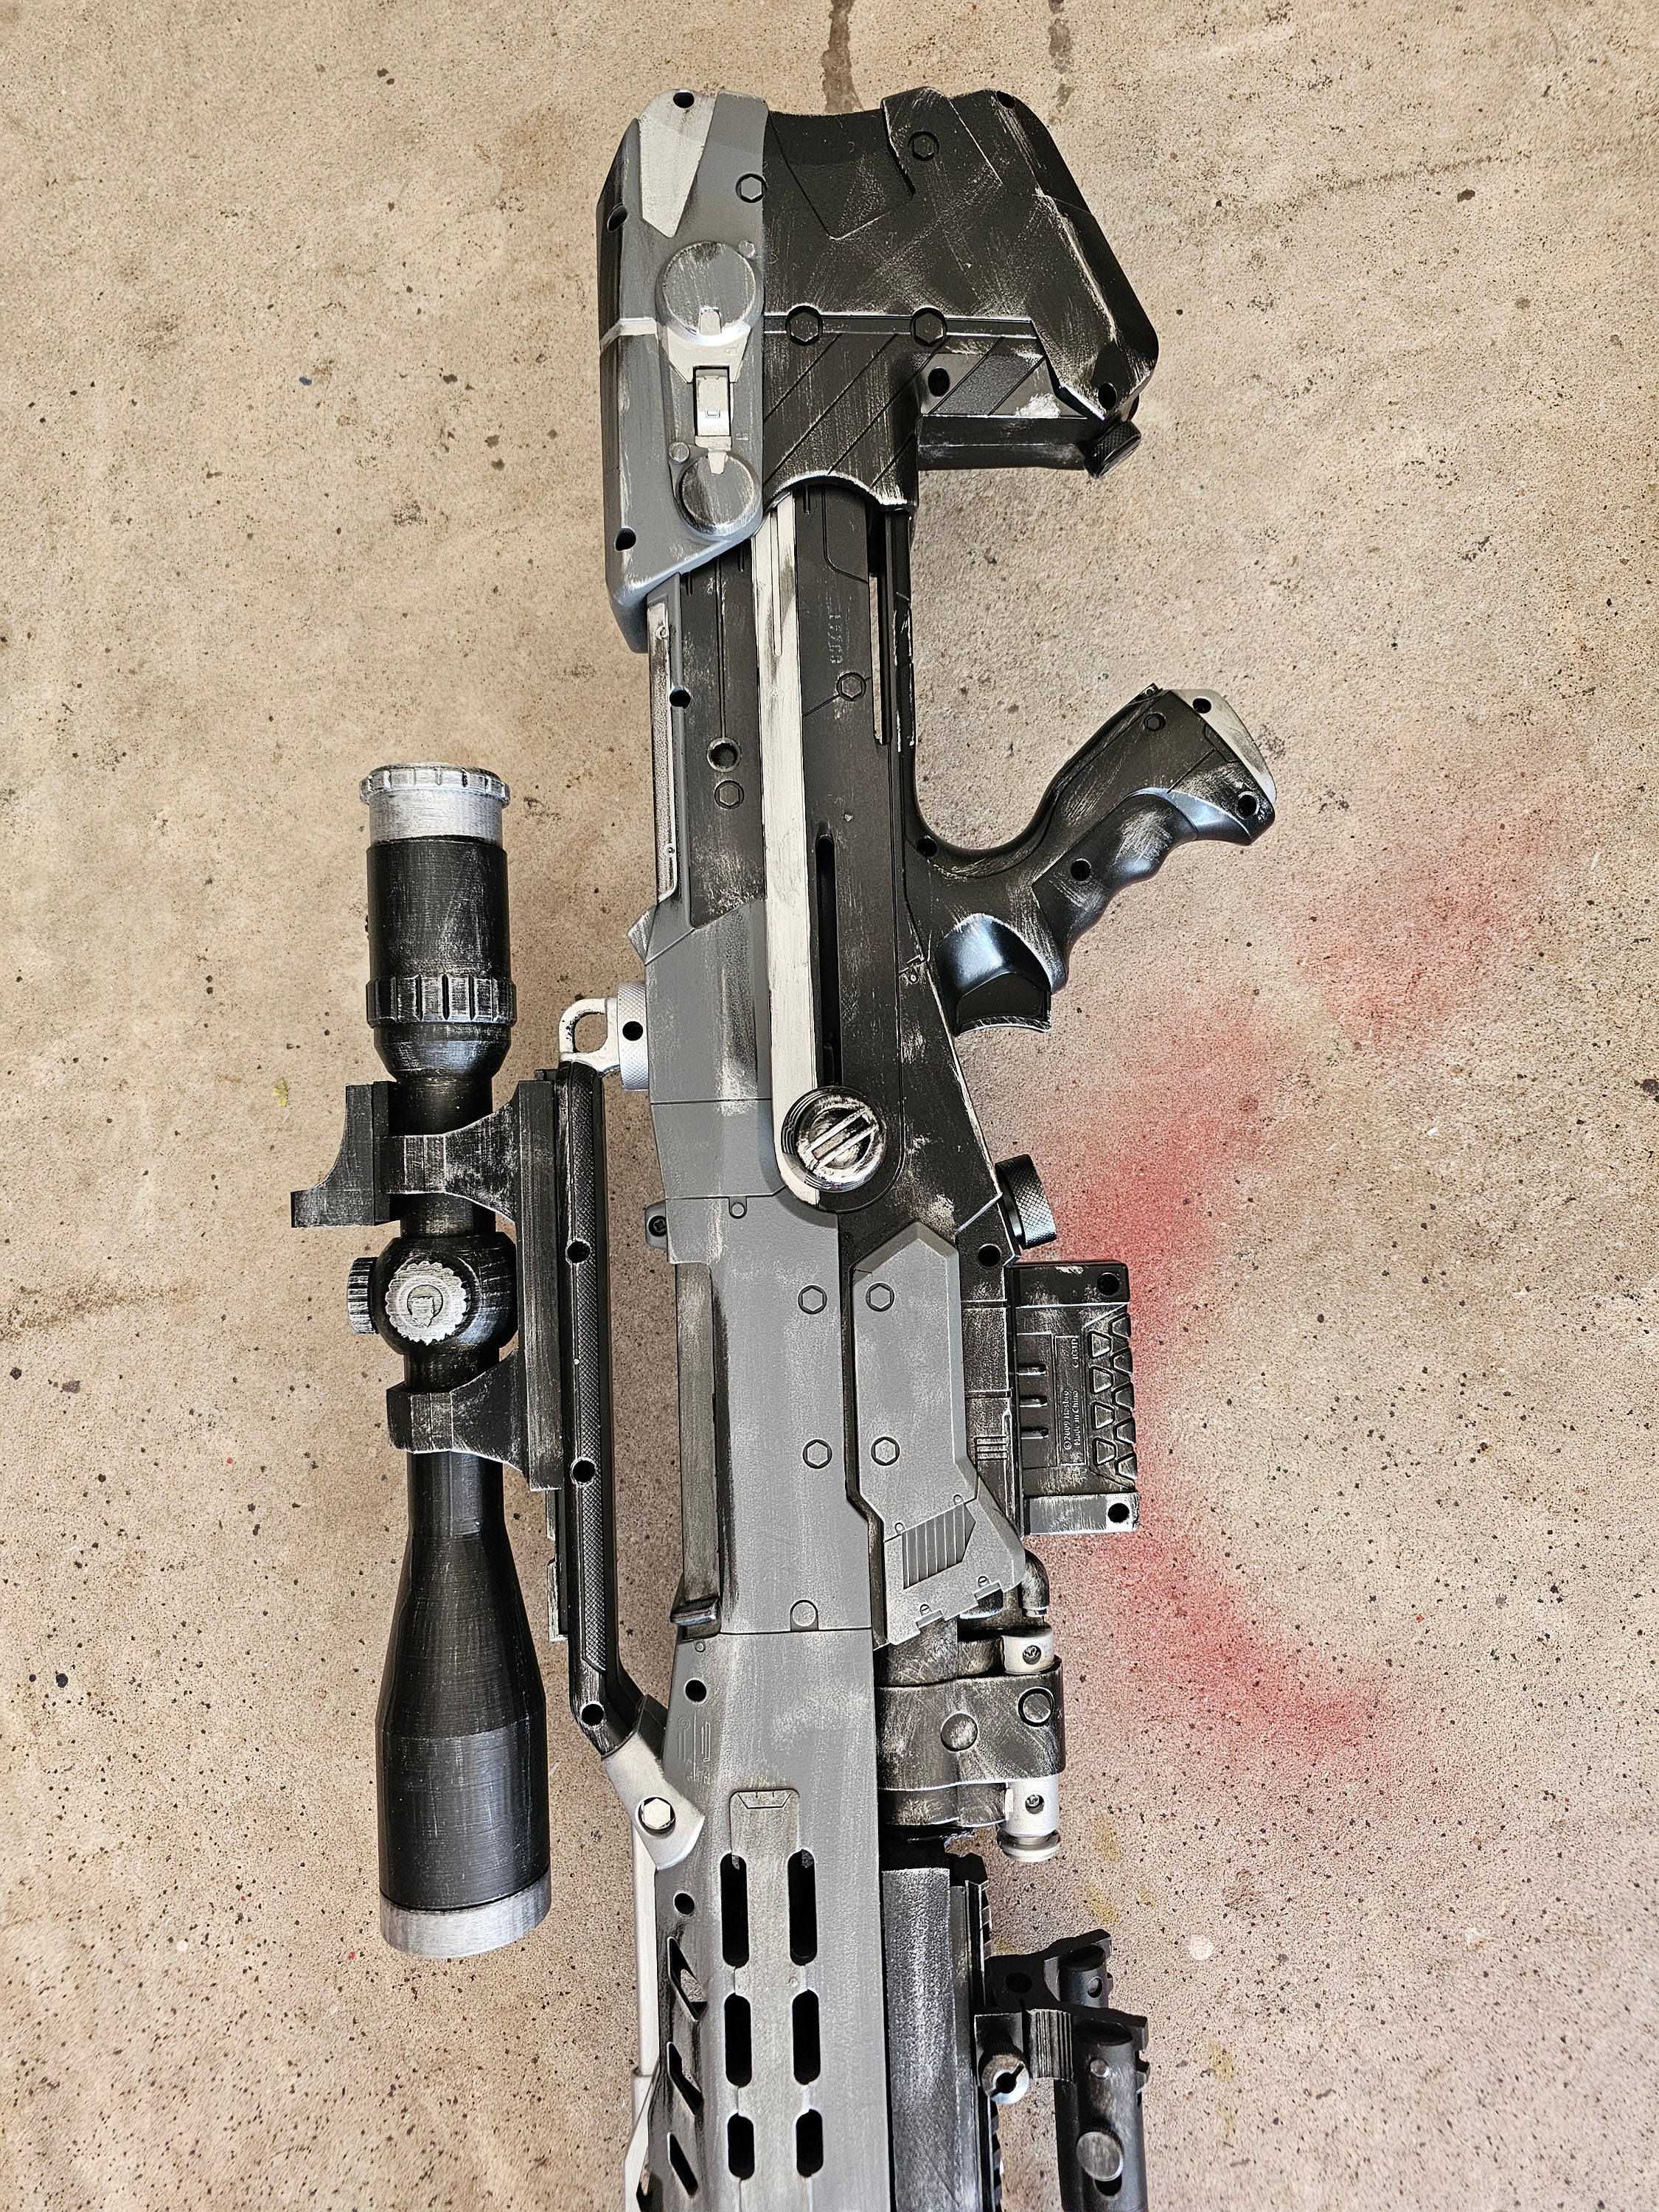 Nerf Long Shot CS-6 - Pistolet Nerf